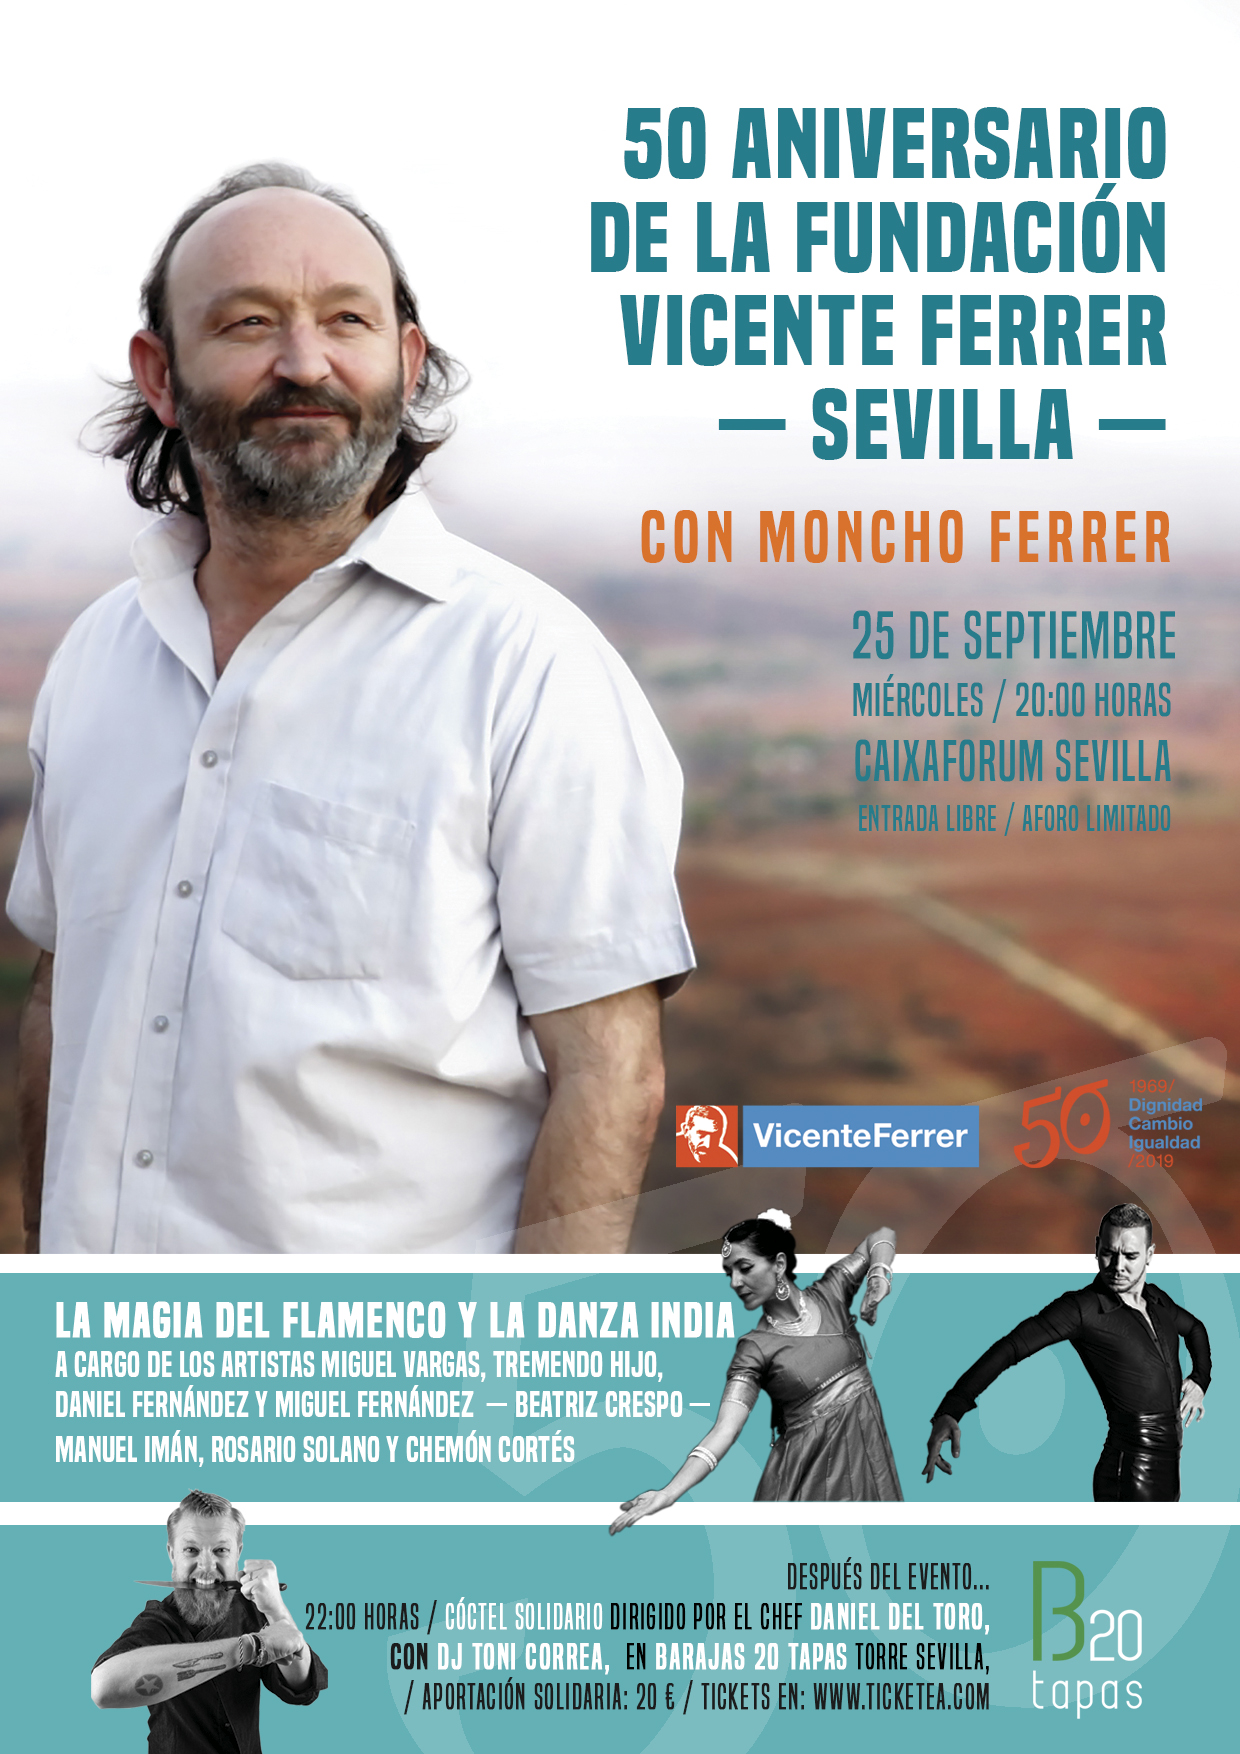 Sevilla acoge la celebración del 50 aniversario de la Fundación Vicente Ferrer con la visita de Moncho Ferrer